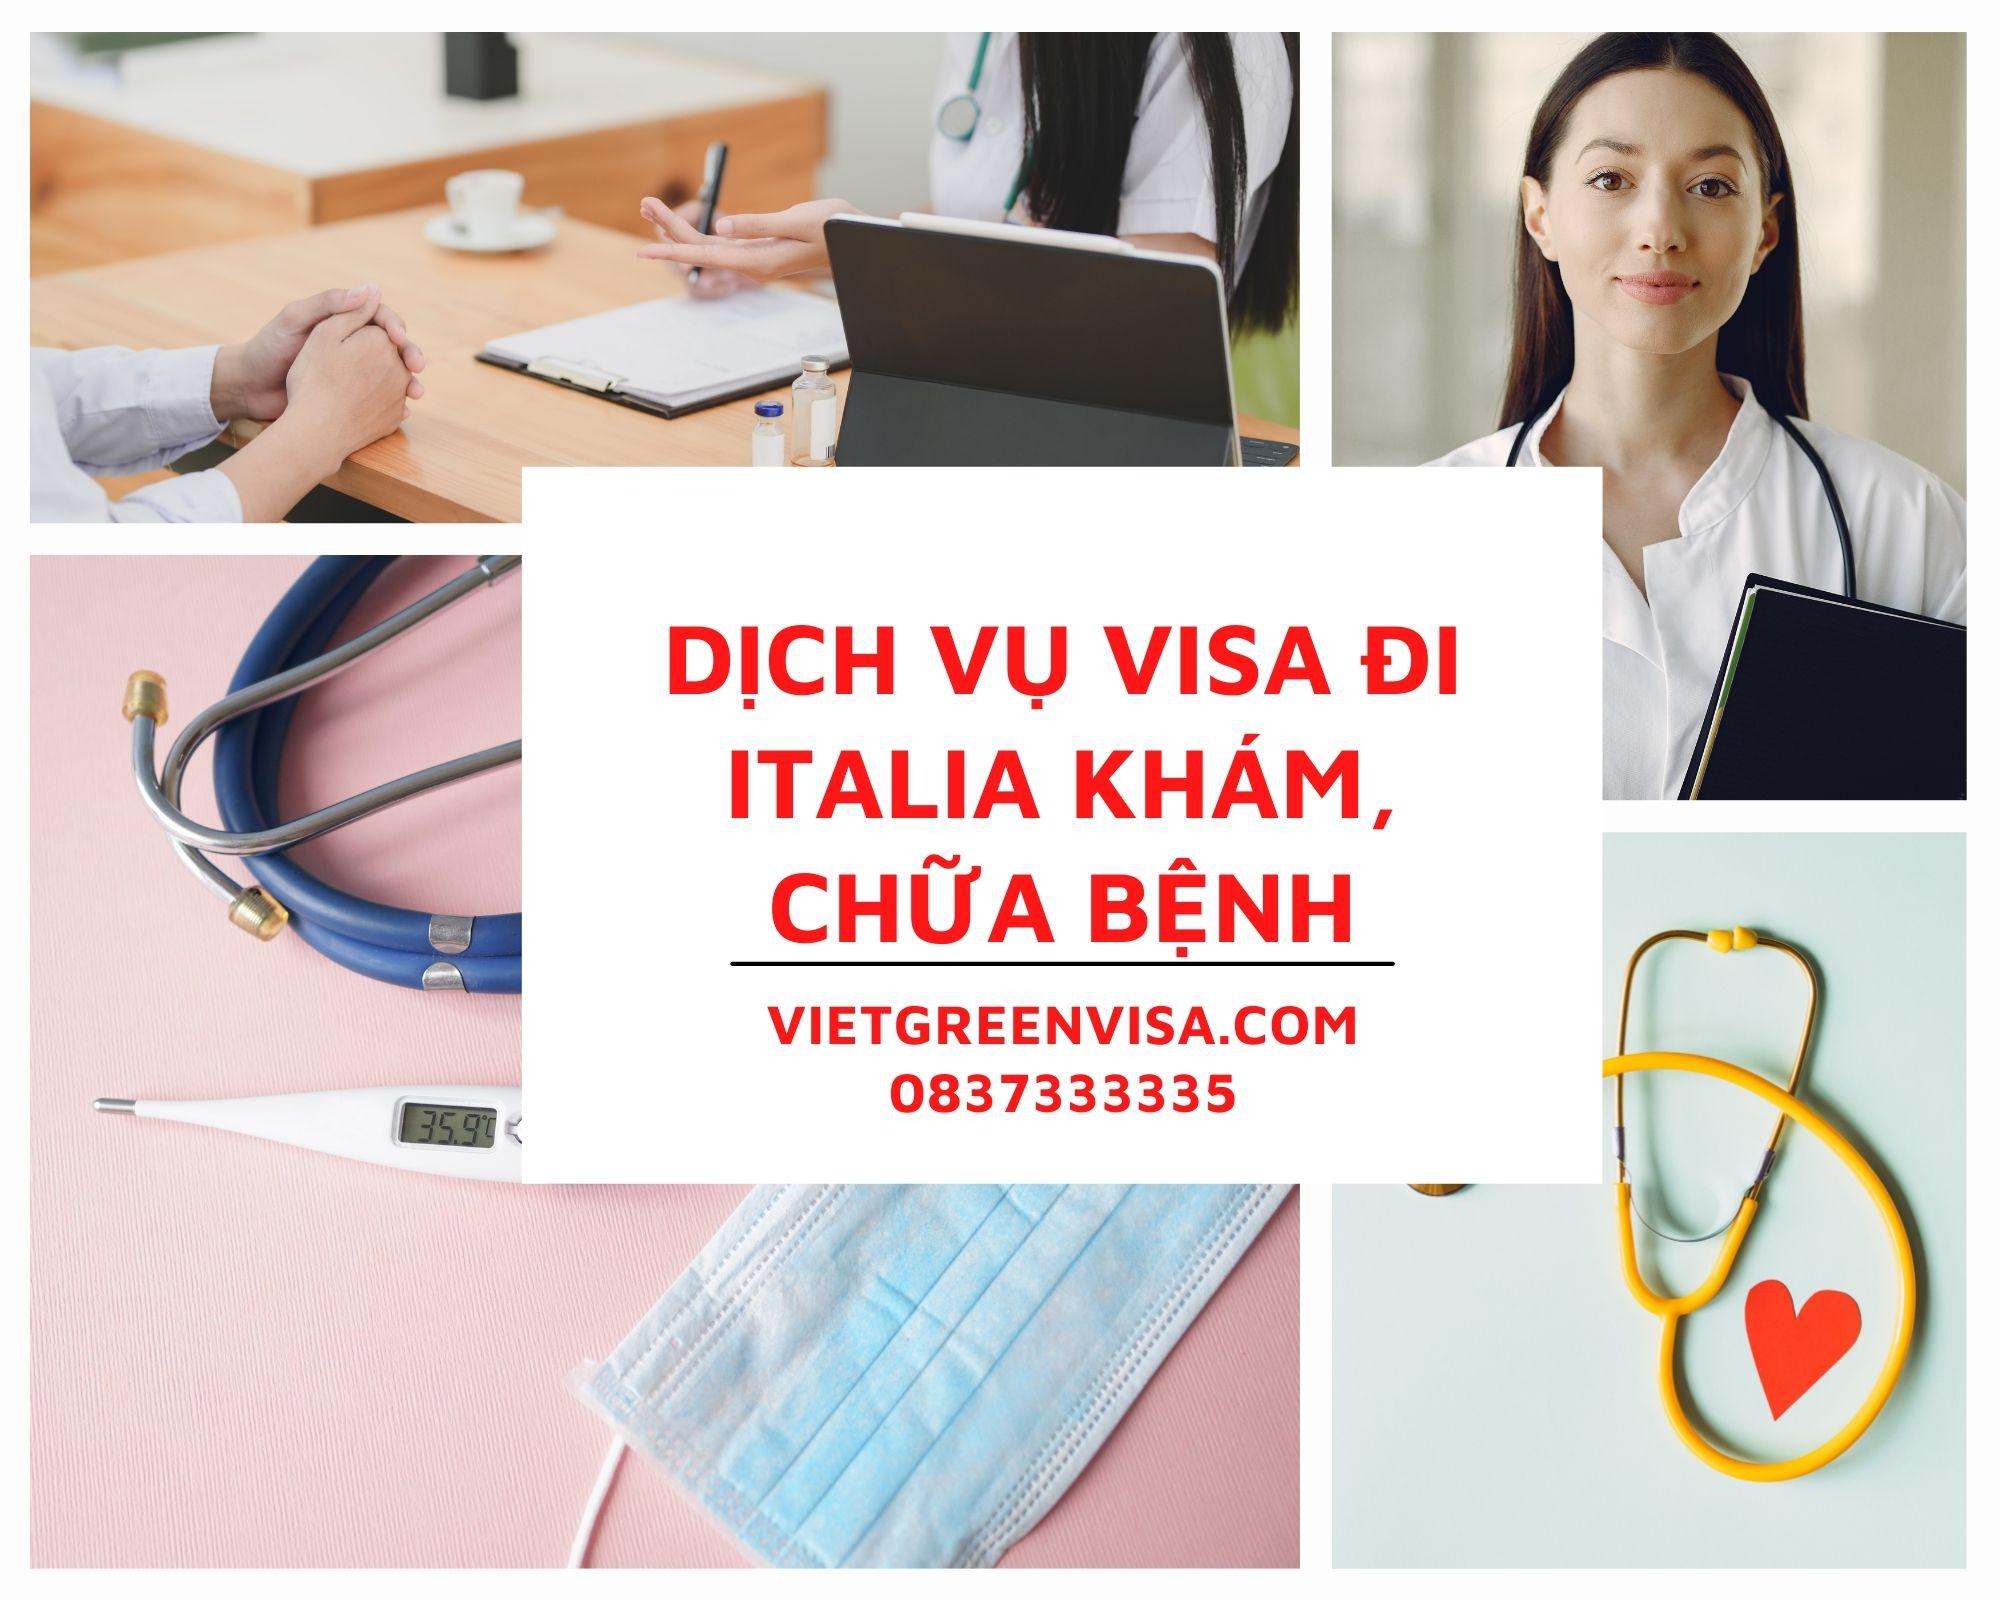 Tư vấn visa đi Italia khám chữa bệnh nhanh chóng